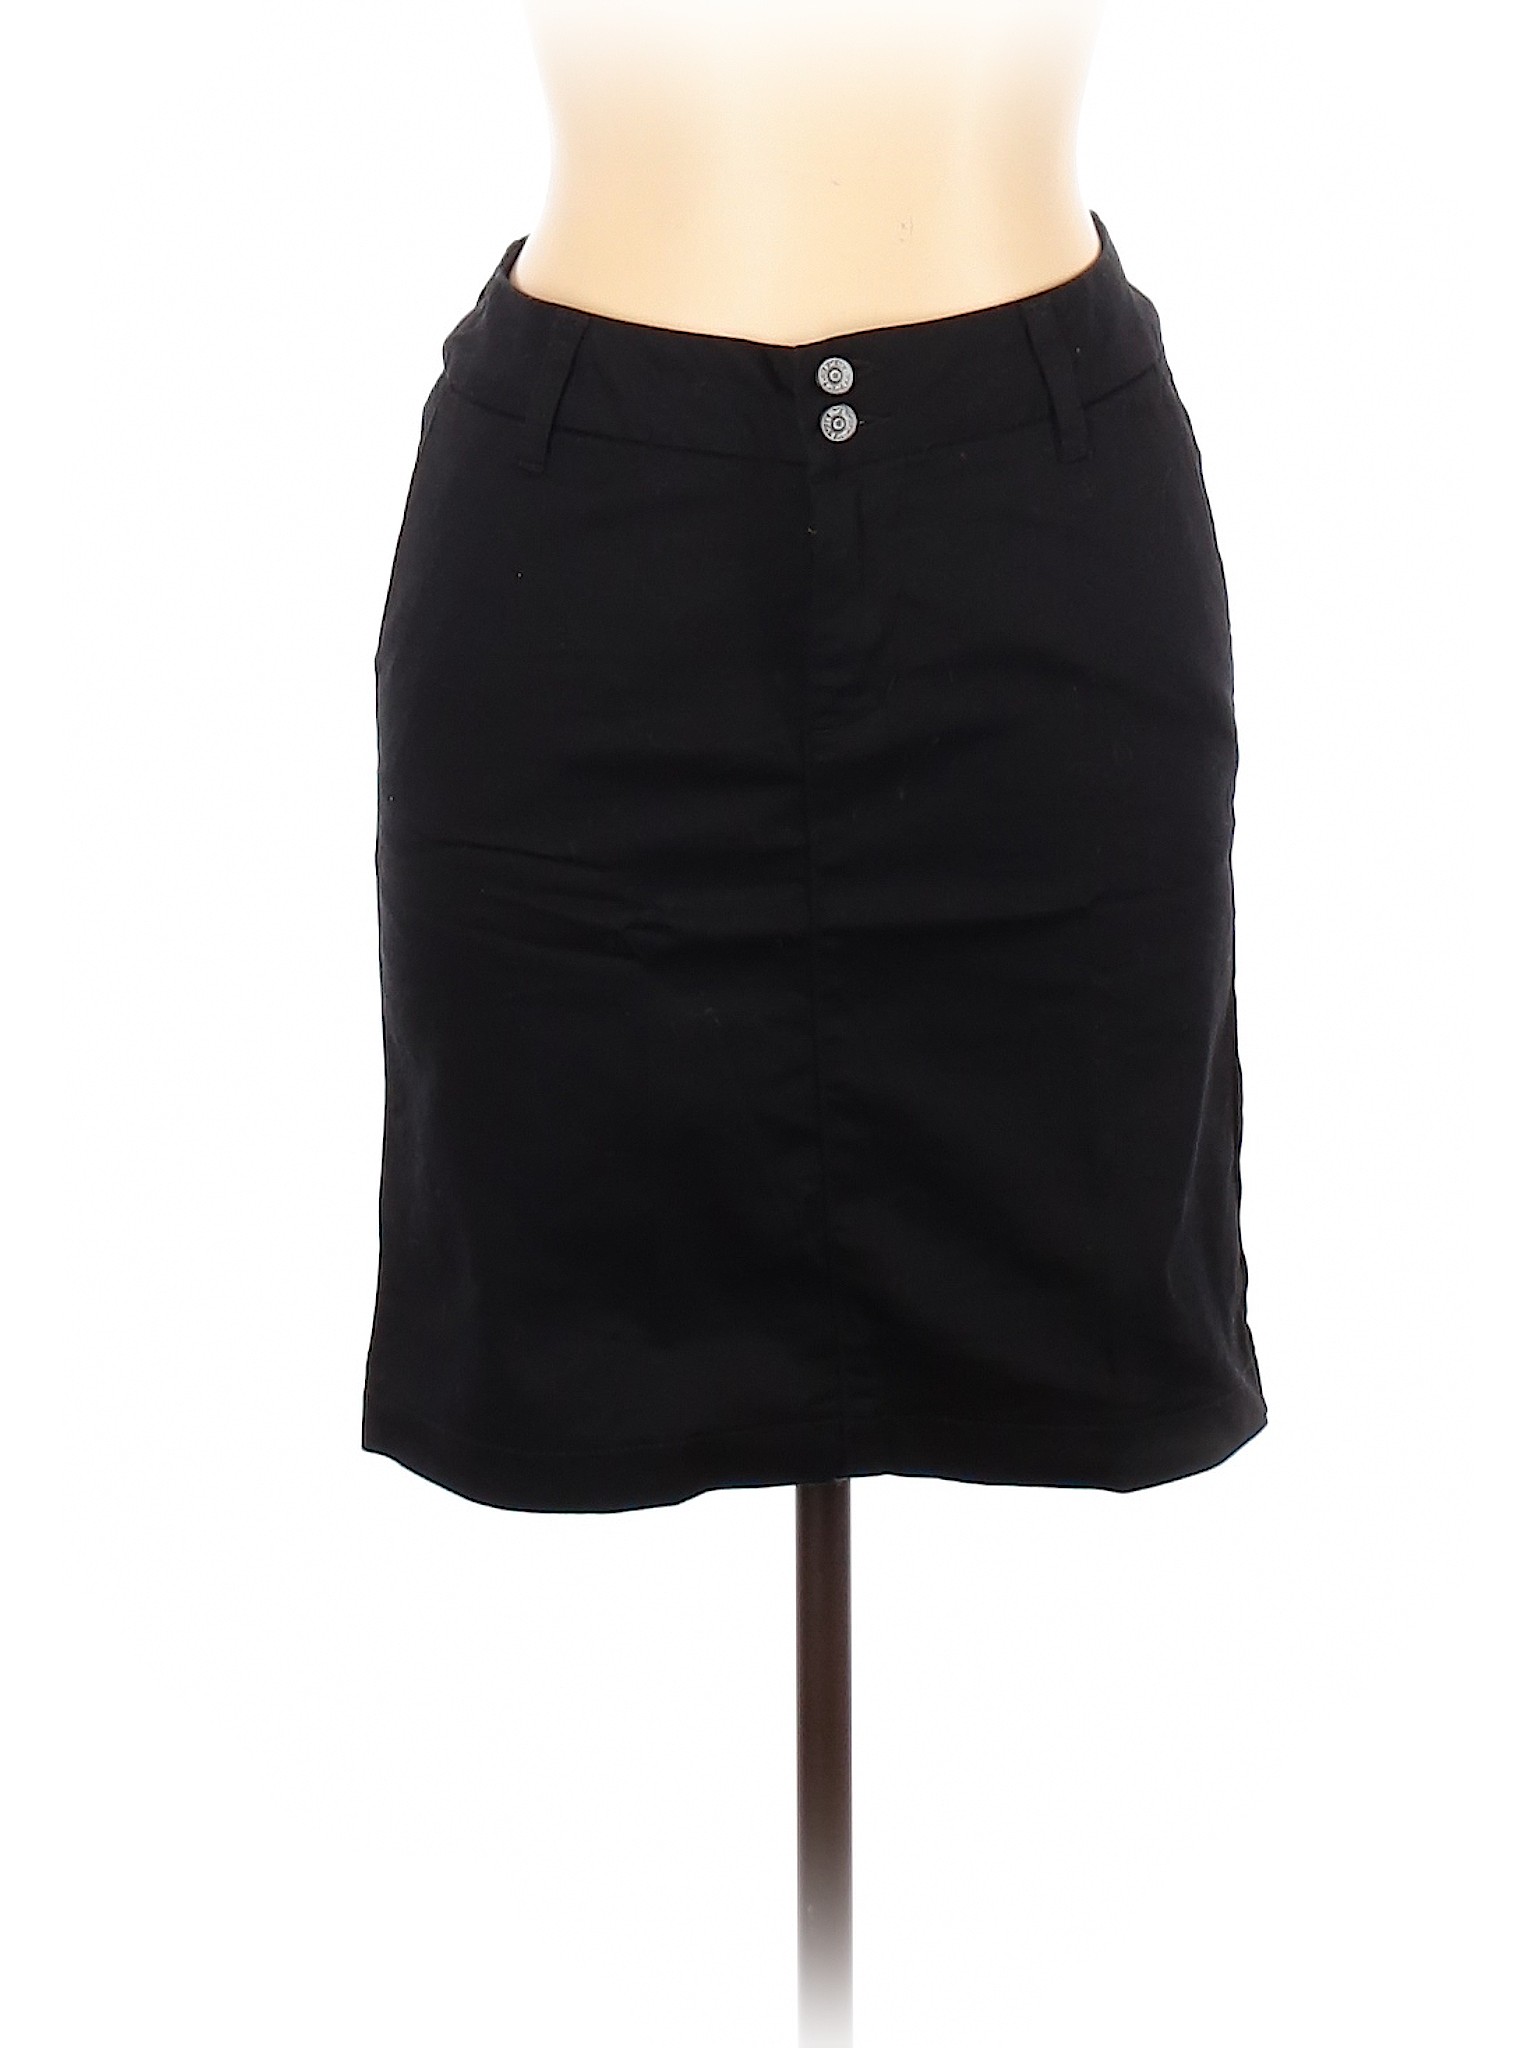 Dickies Women Black Denim Skirt 7 | eBay